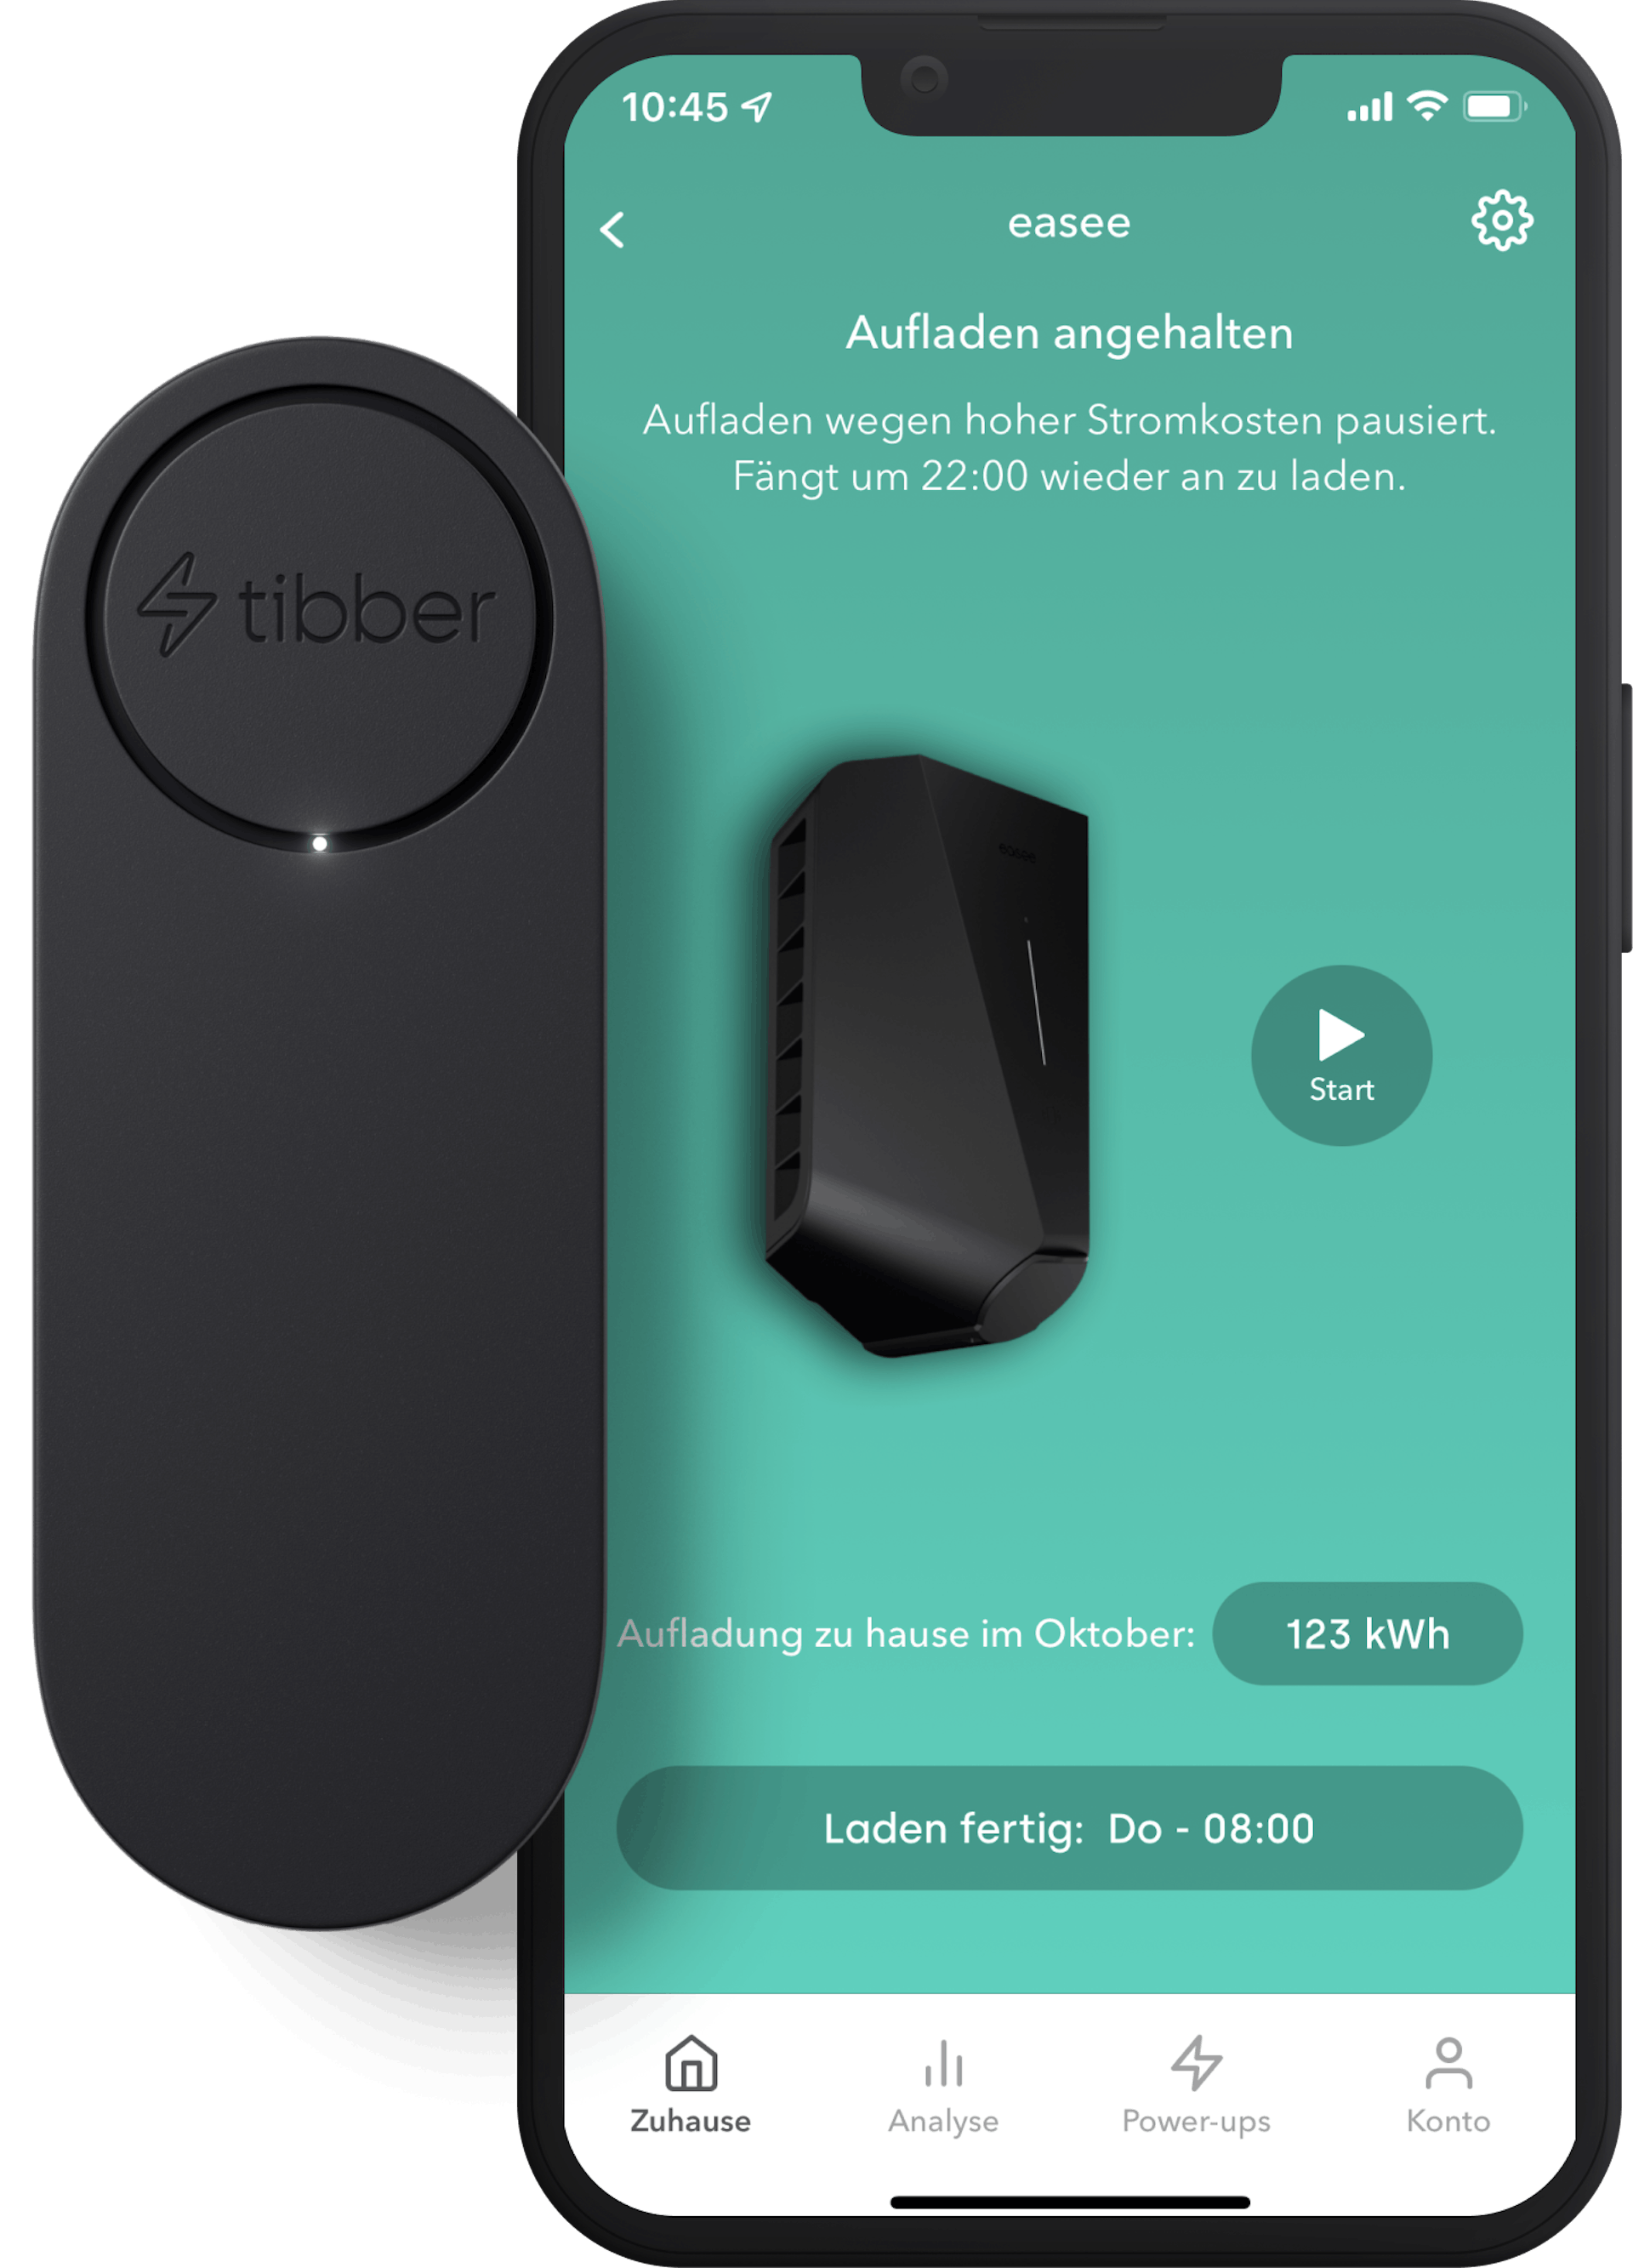 Smart Charging Screen DE